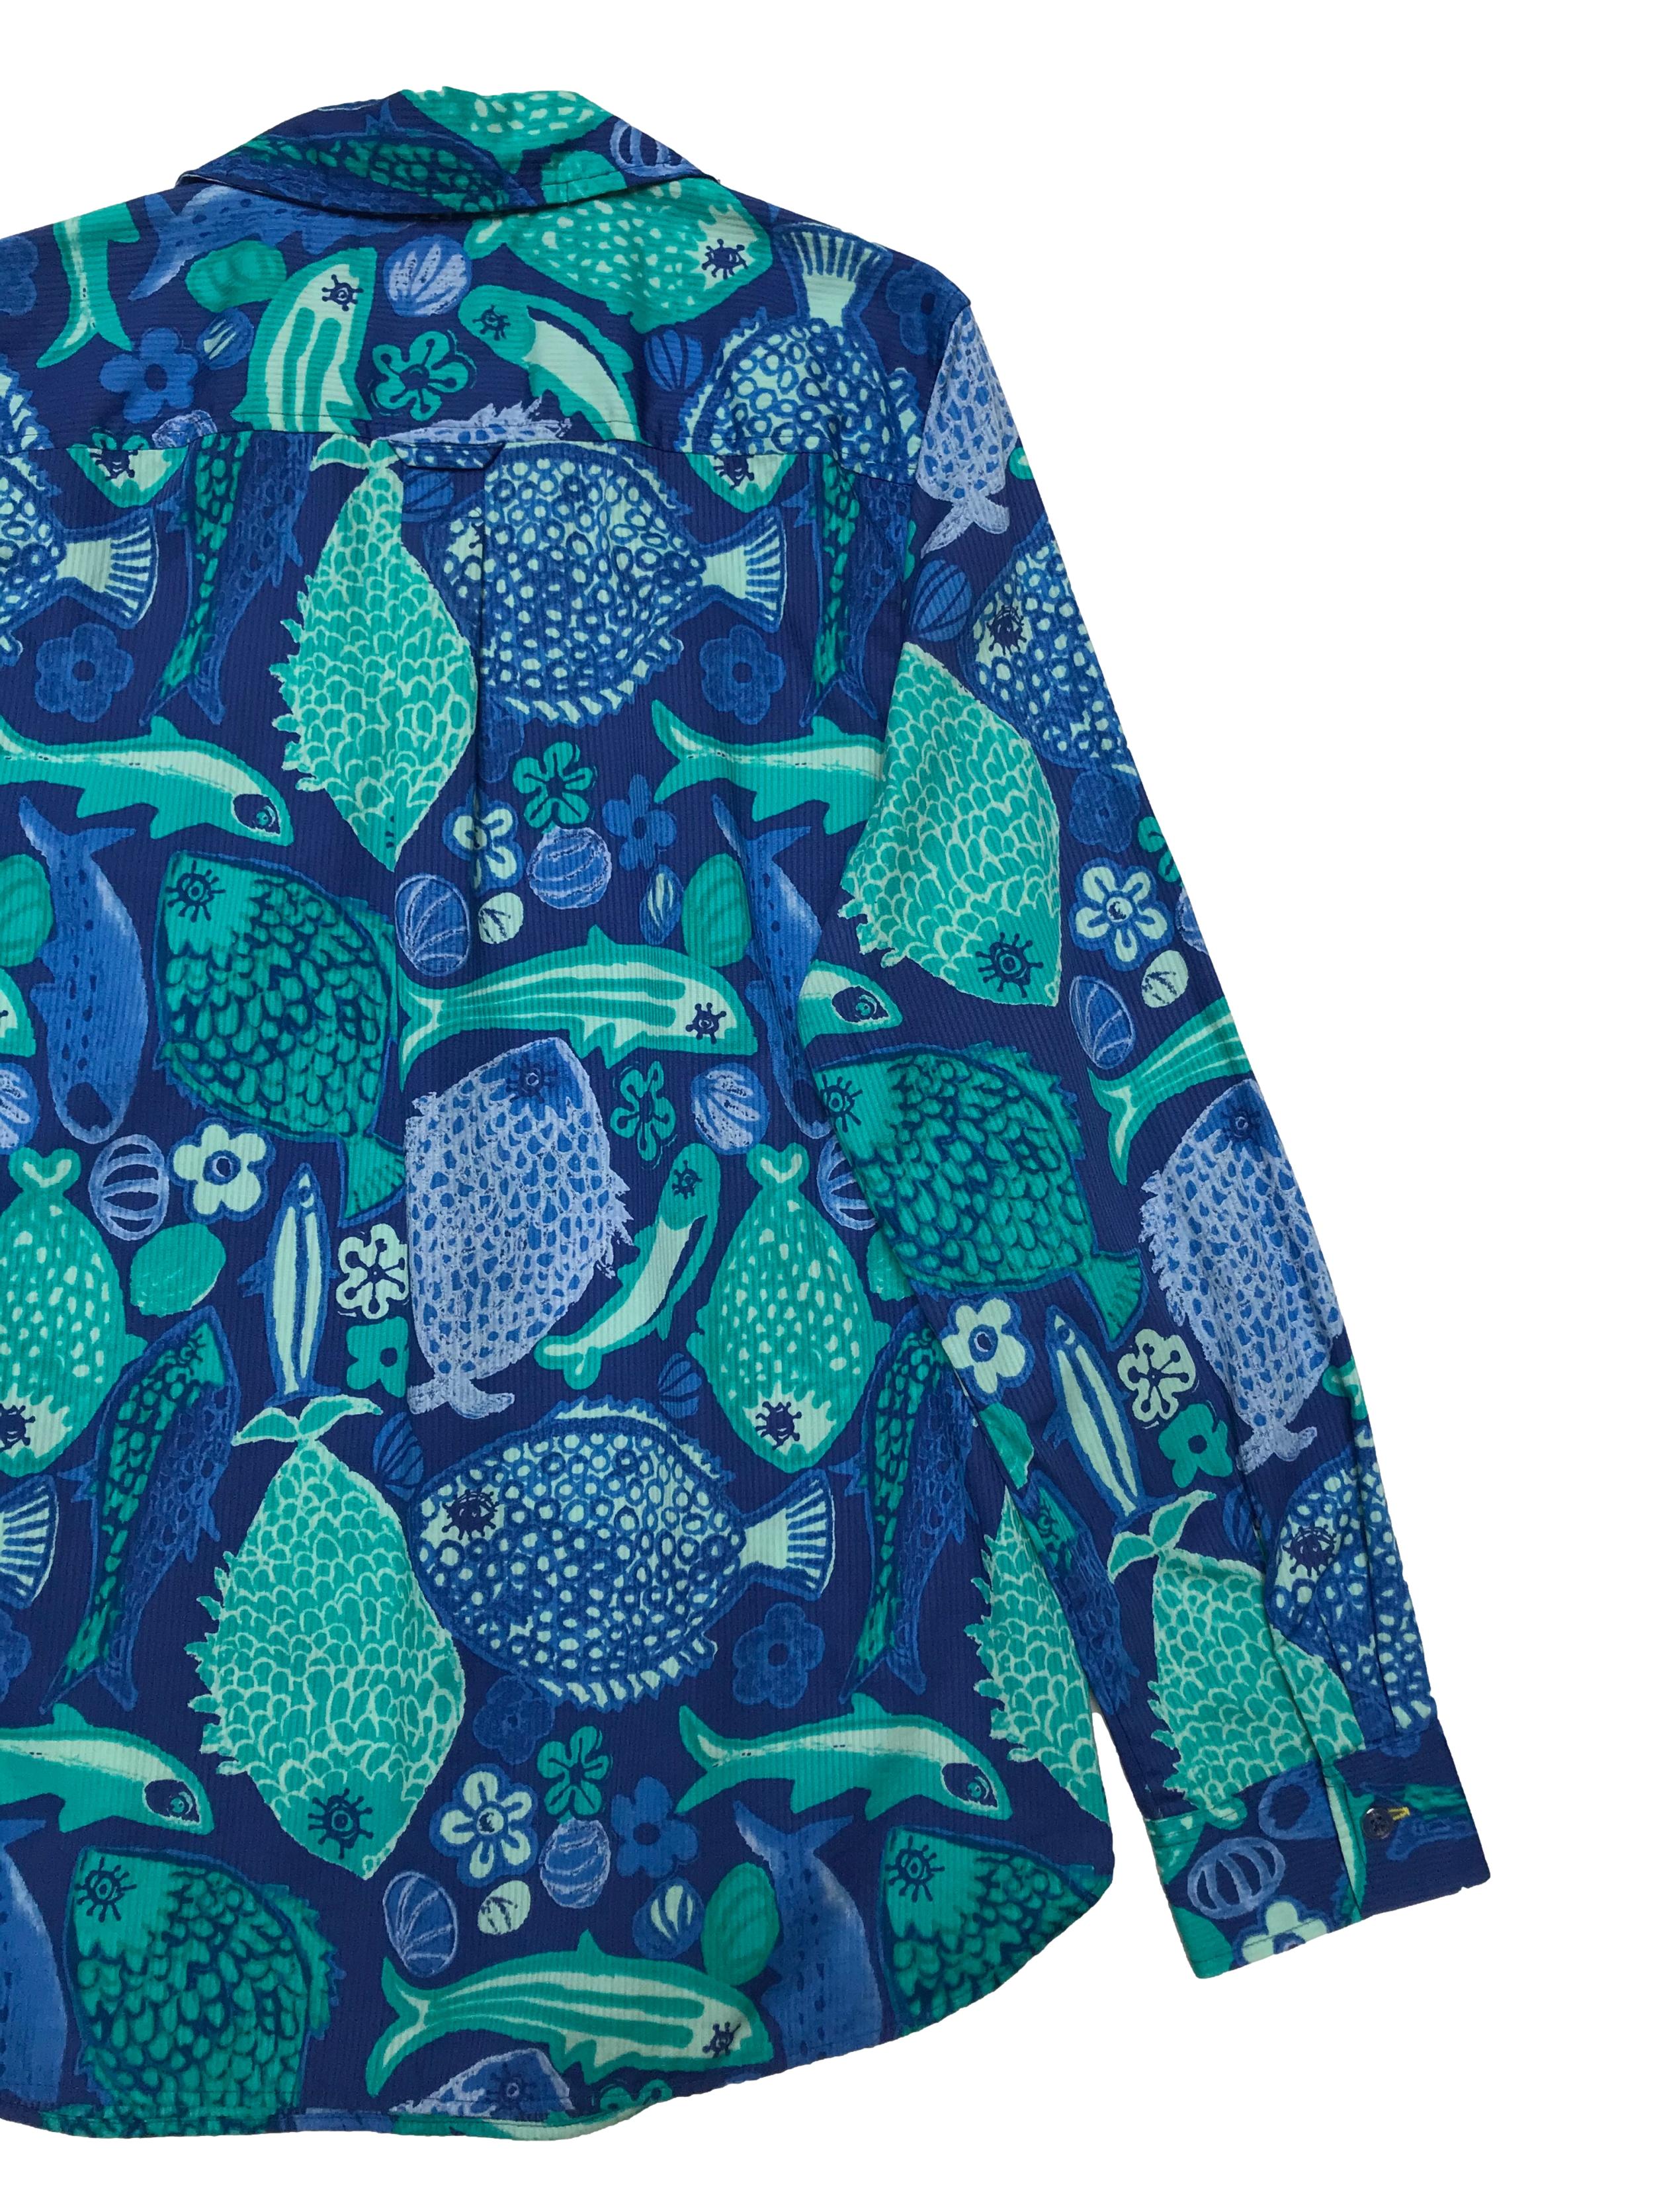 Blusa Talbots 100% algodón con textura en líneas, estampado de peces y flores de tonos azules, con botones en el pecho, es suelta. Busto 98cm Largo 65cm. Precio original s/ 290